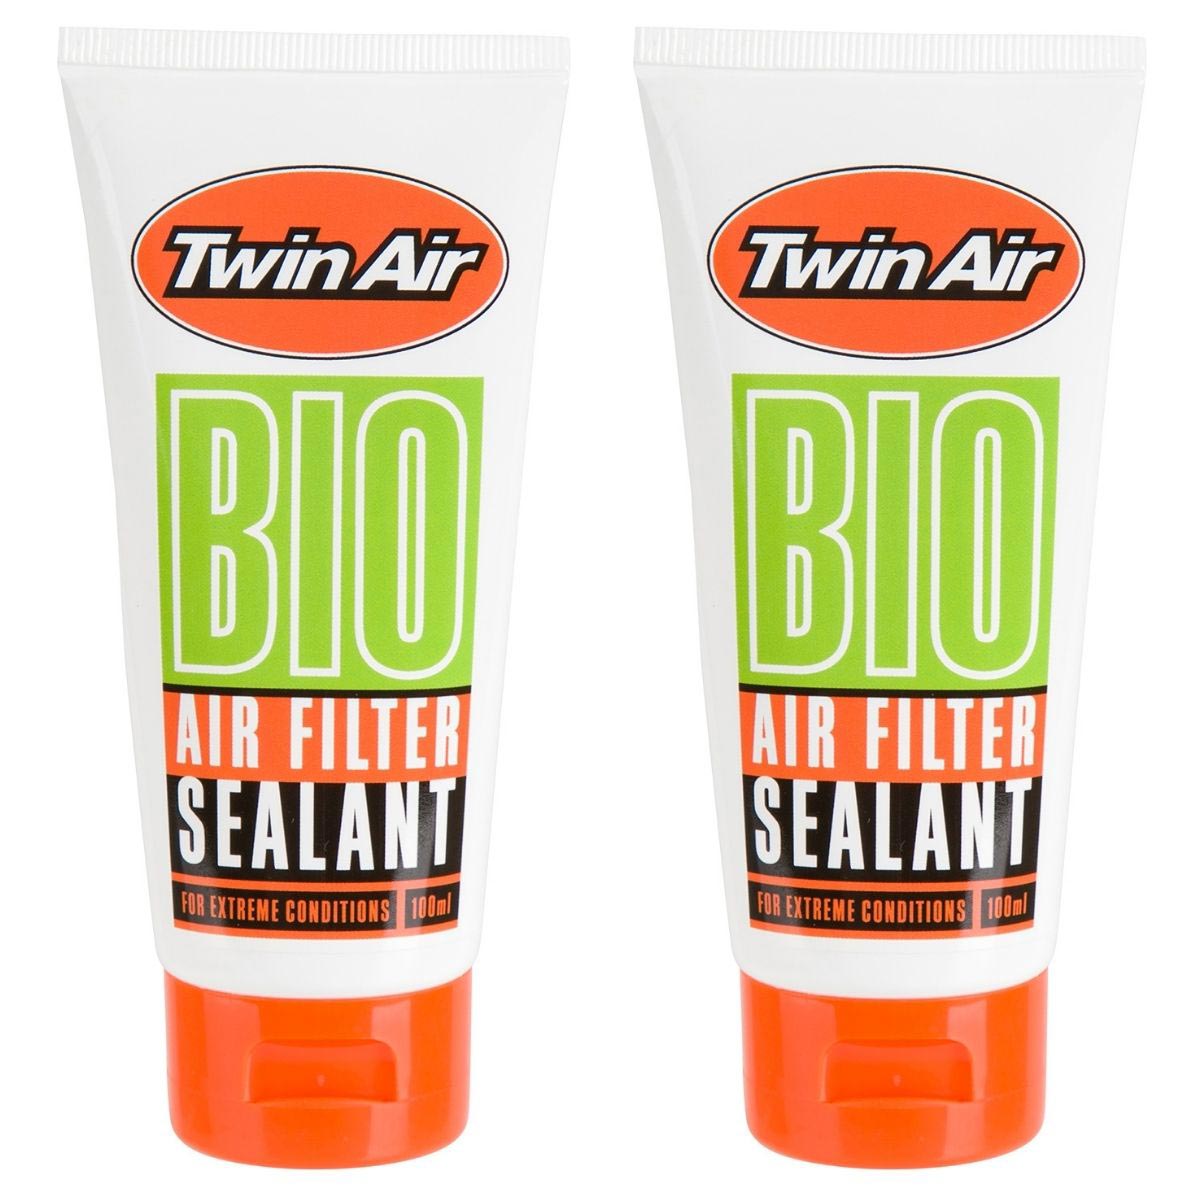 Twin Air Air Filter Grease Bio Set of 2, 100 ml each